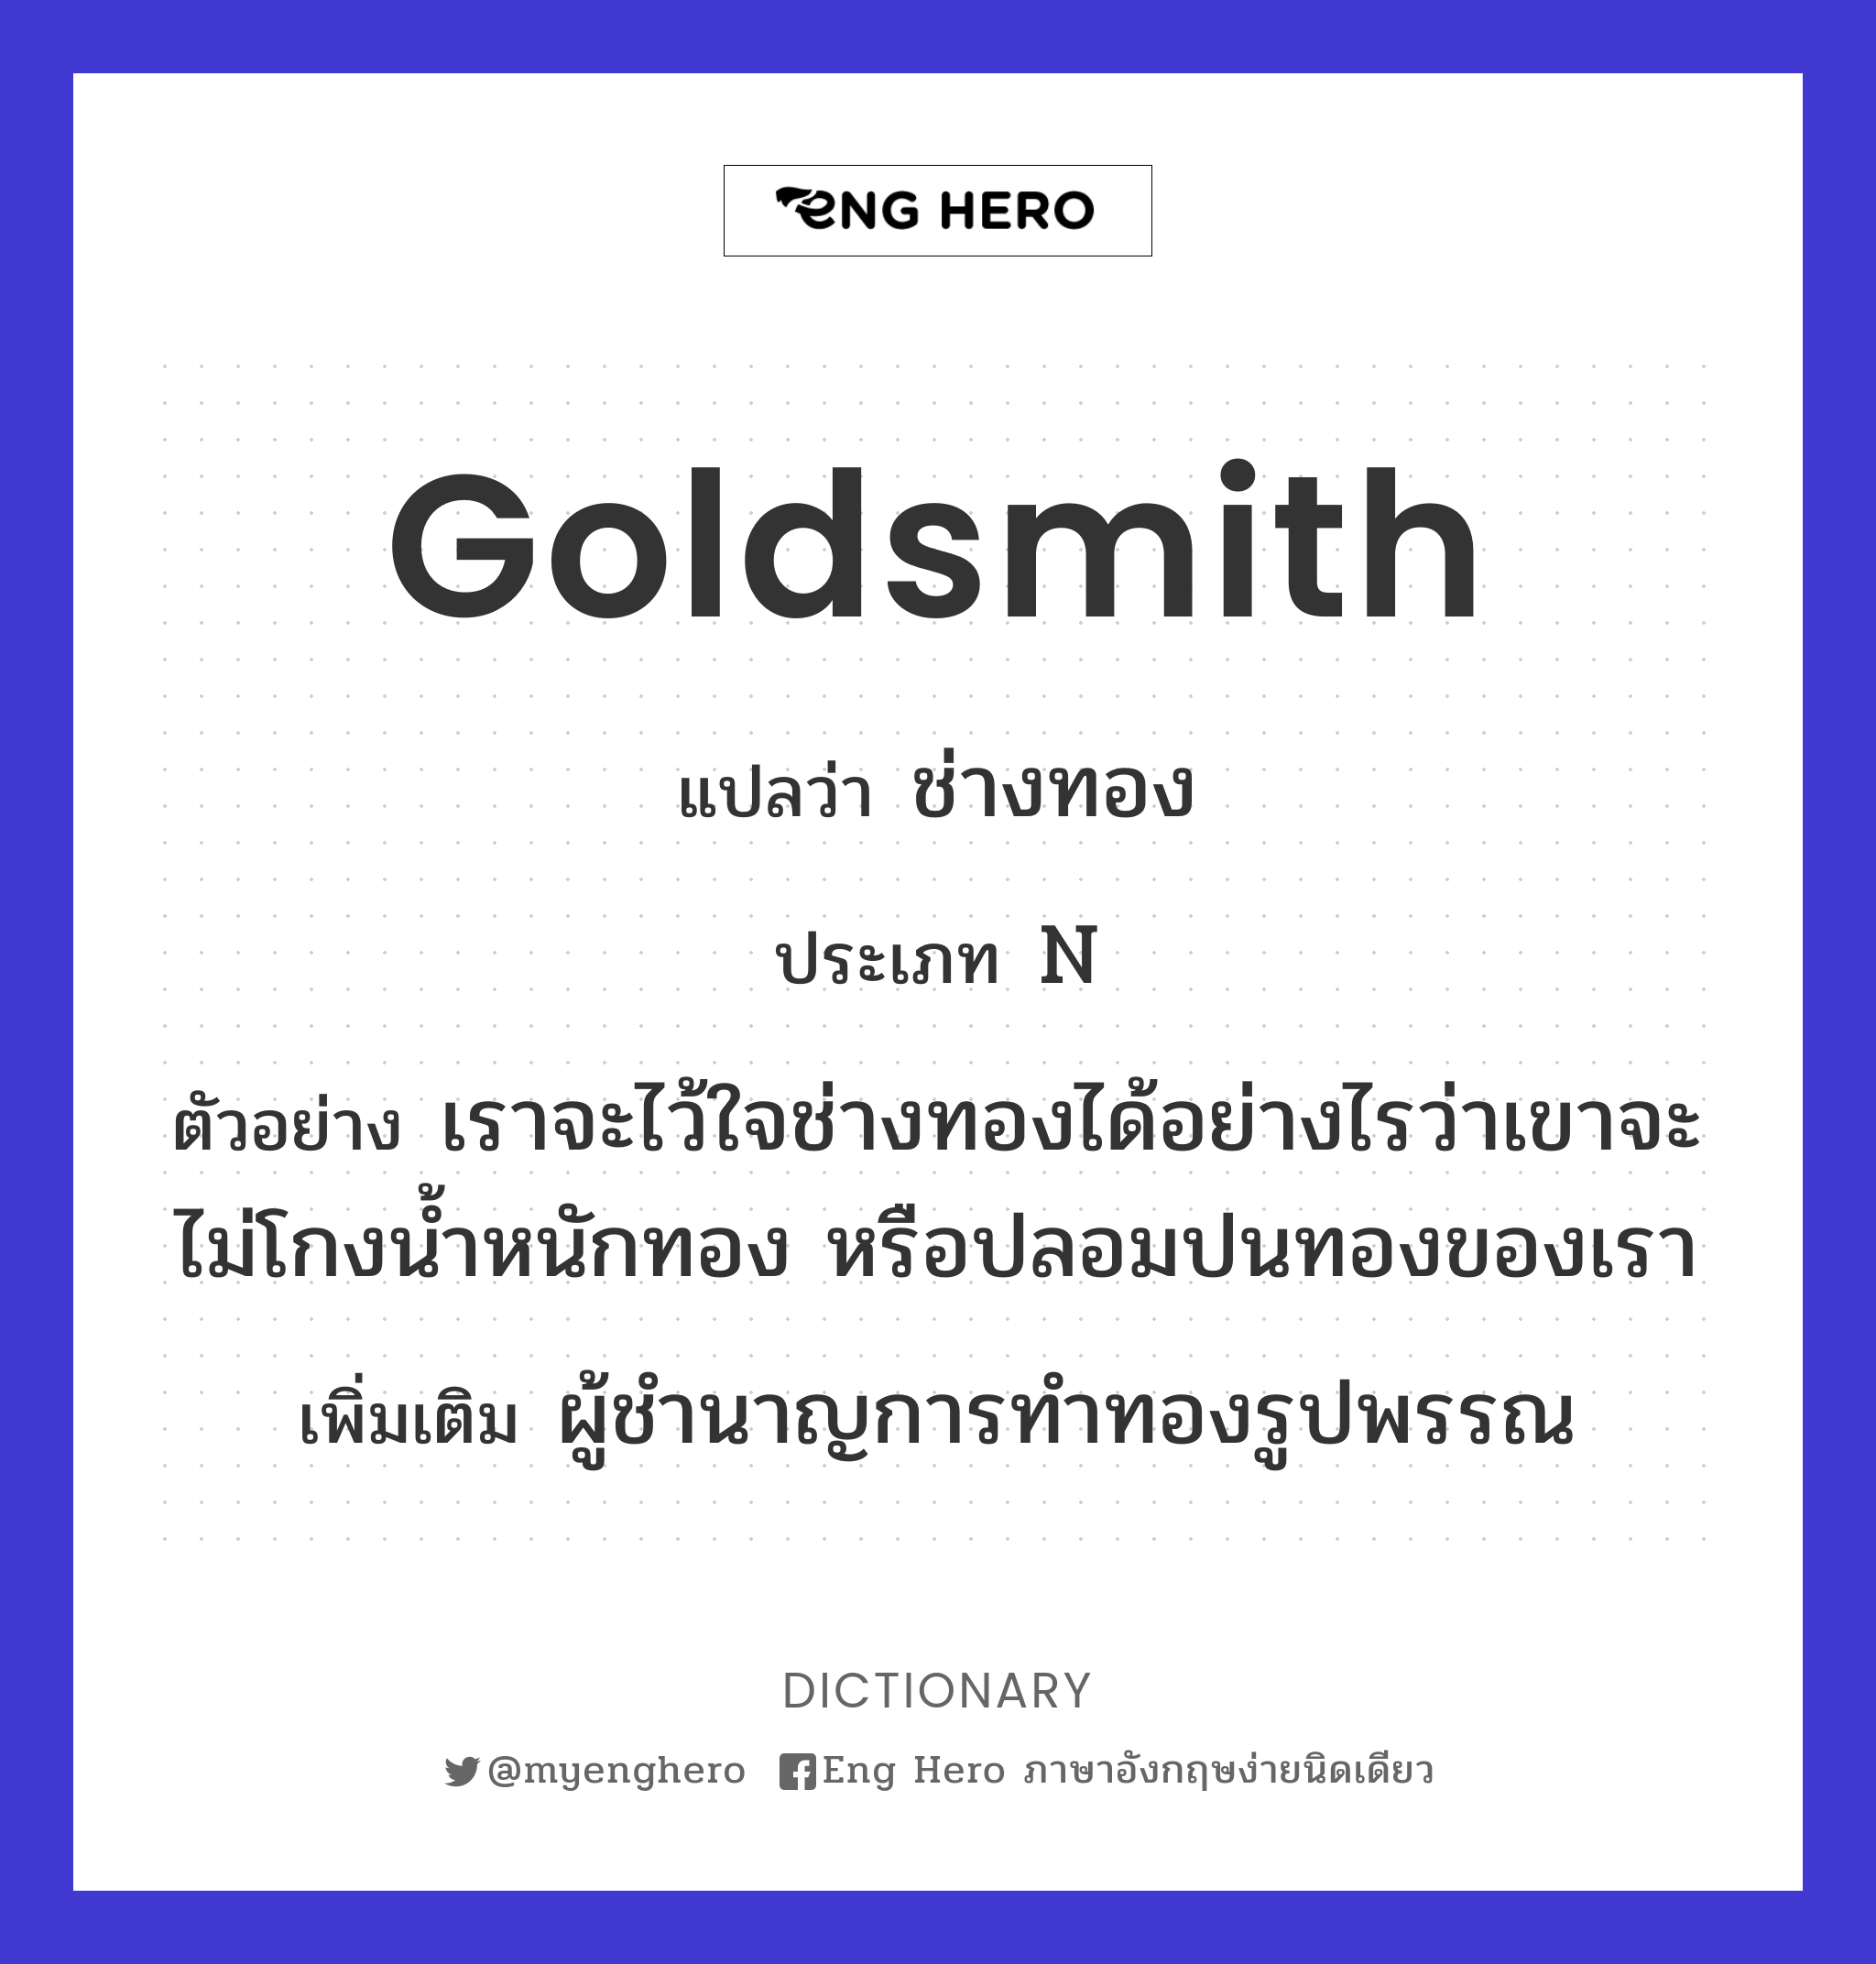 goldsmith